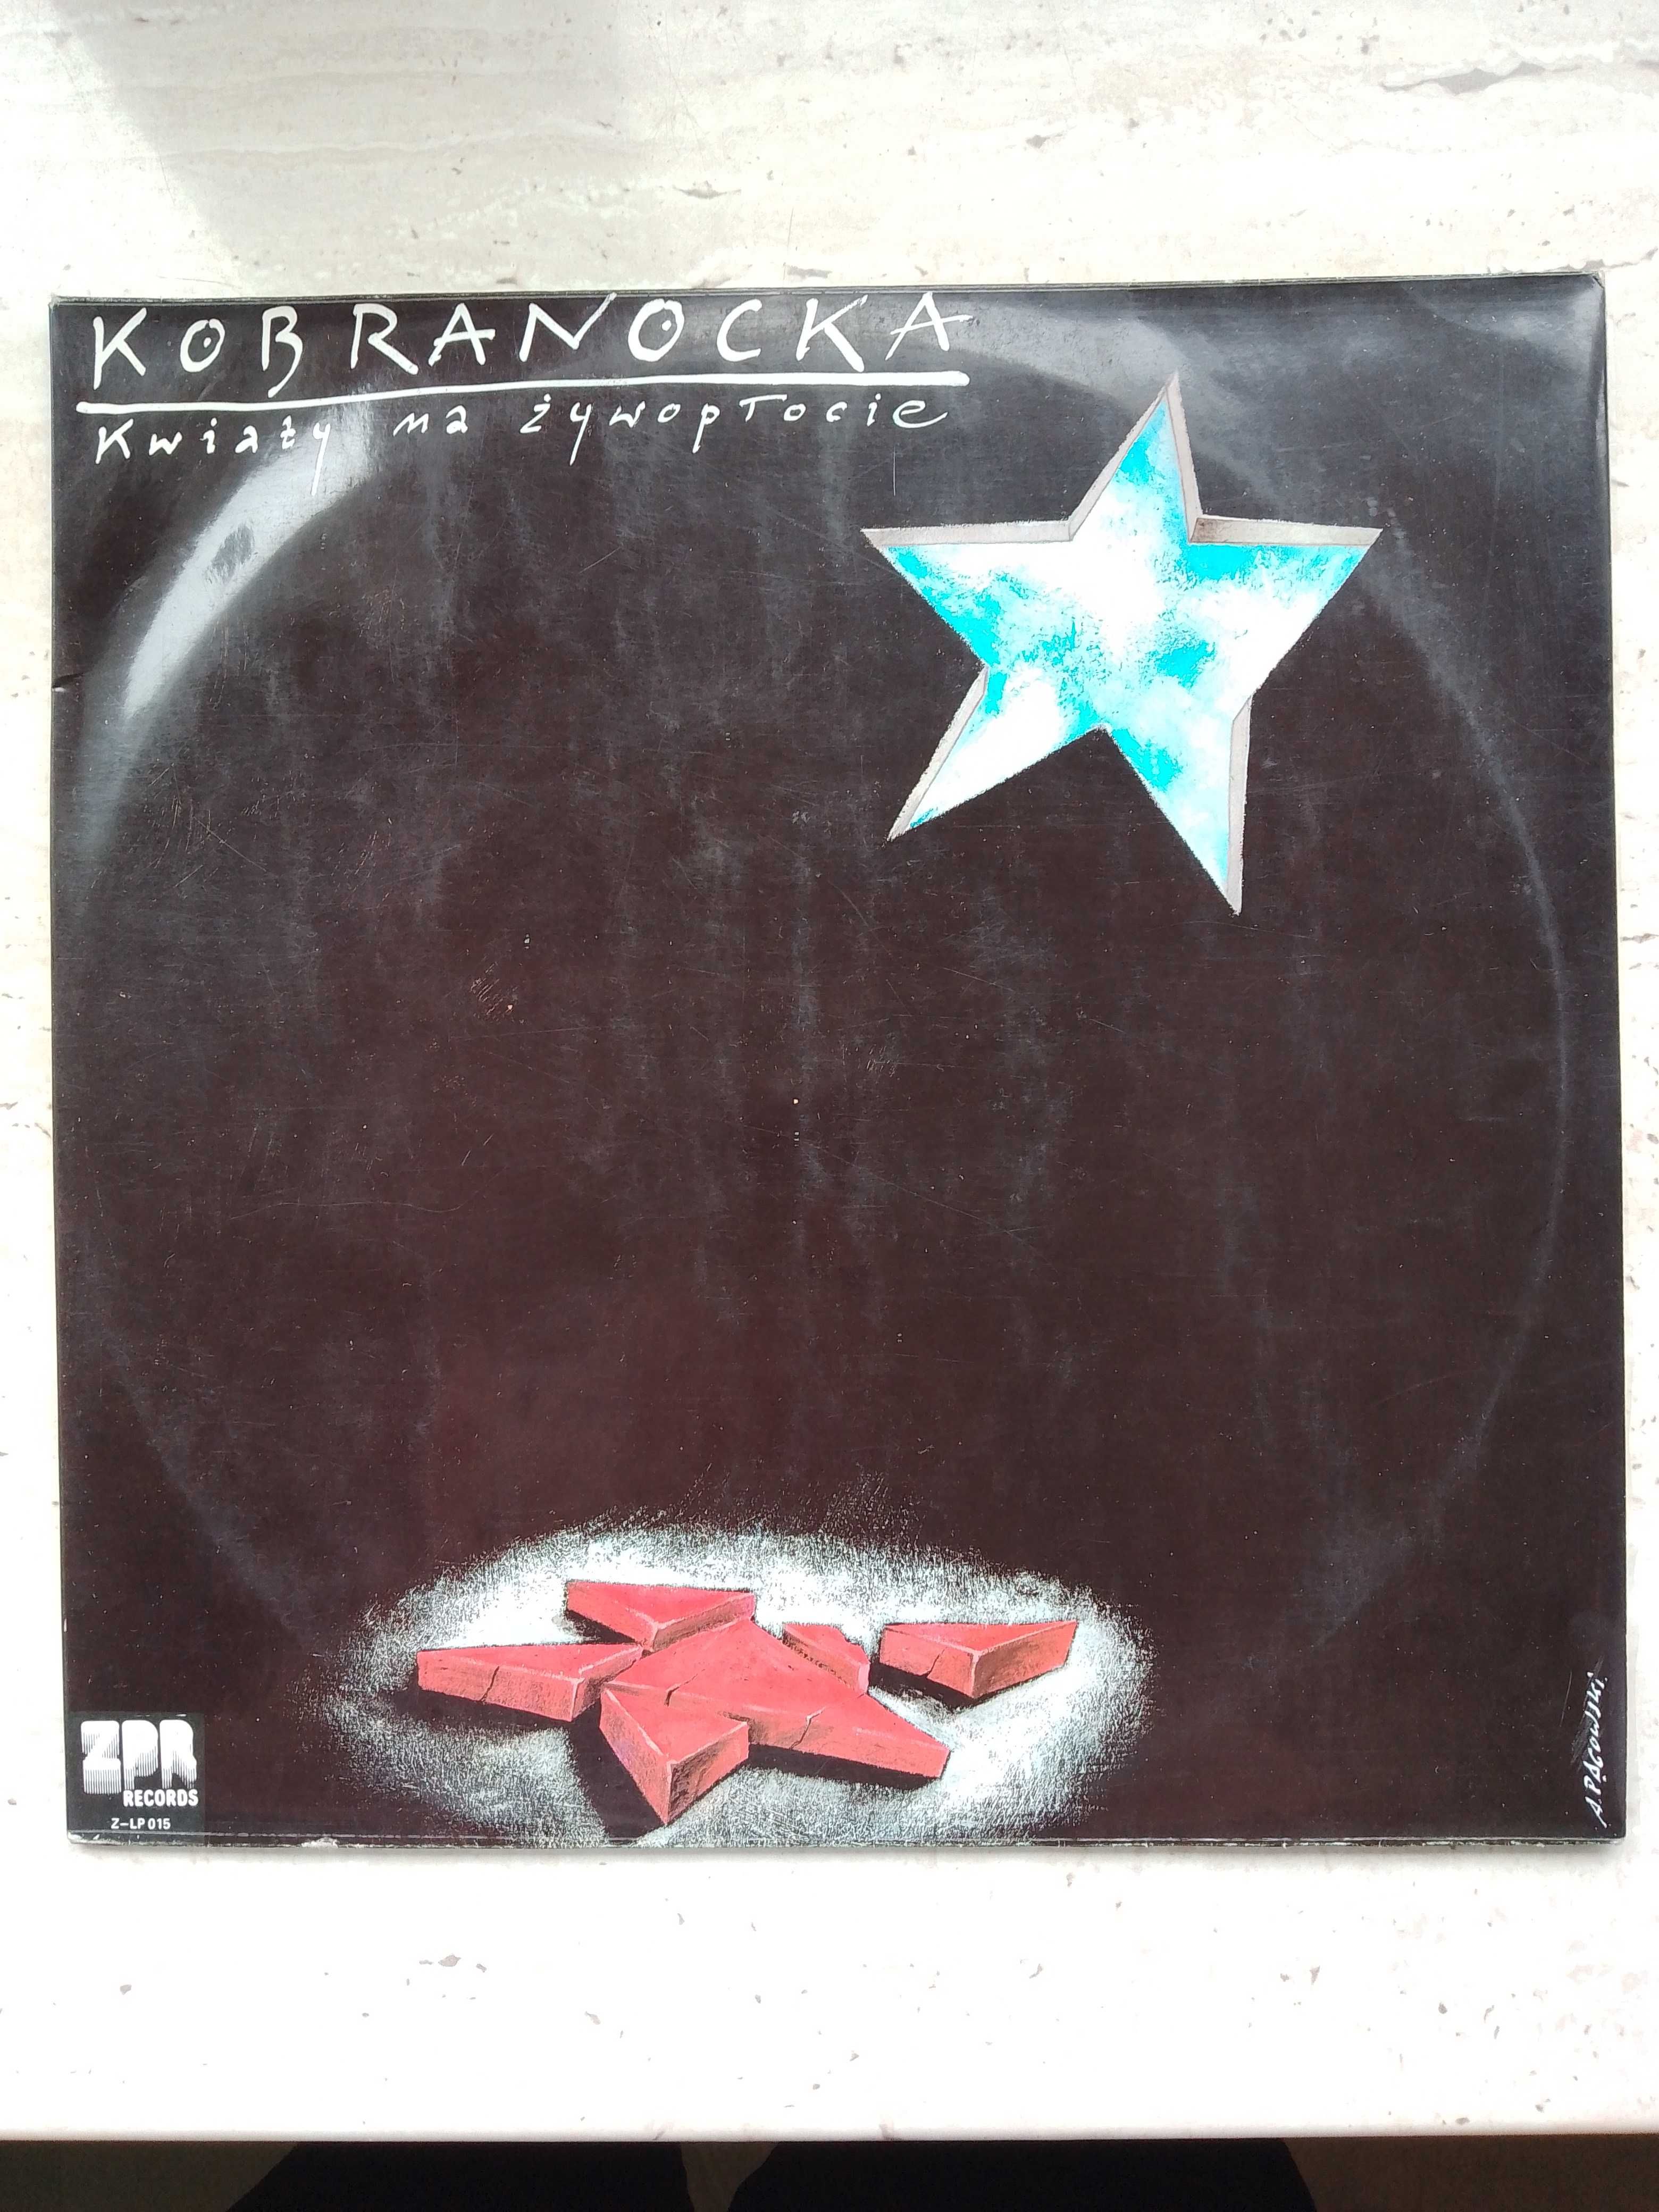 Płyta winylowa Kobranocka "Kwiaty na żywopłocie"